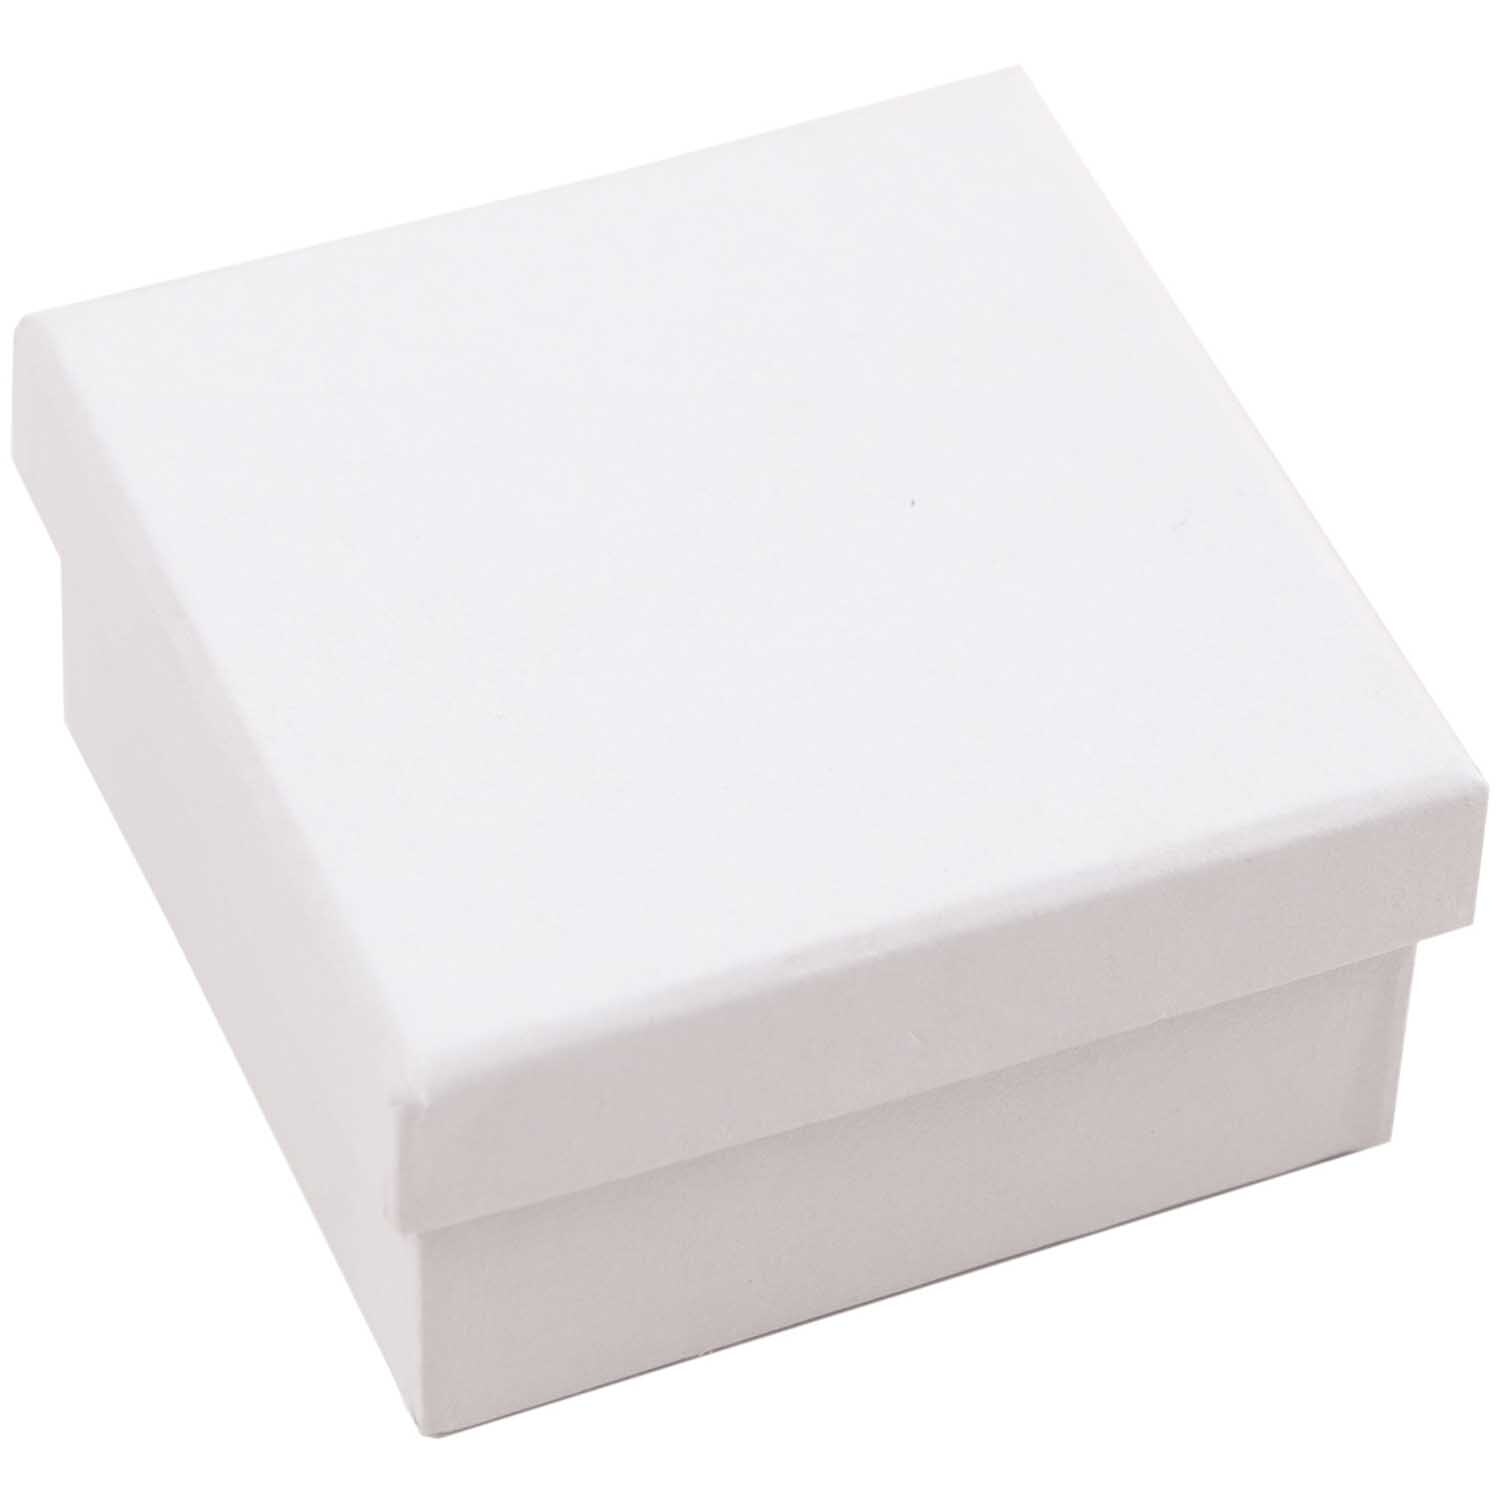 Quadratbox weiß